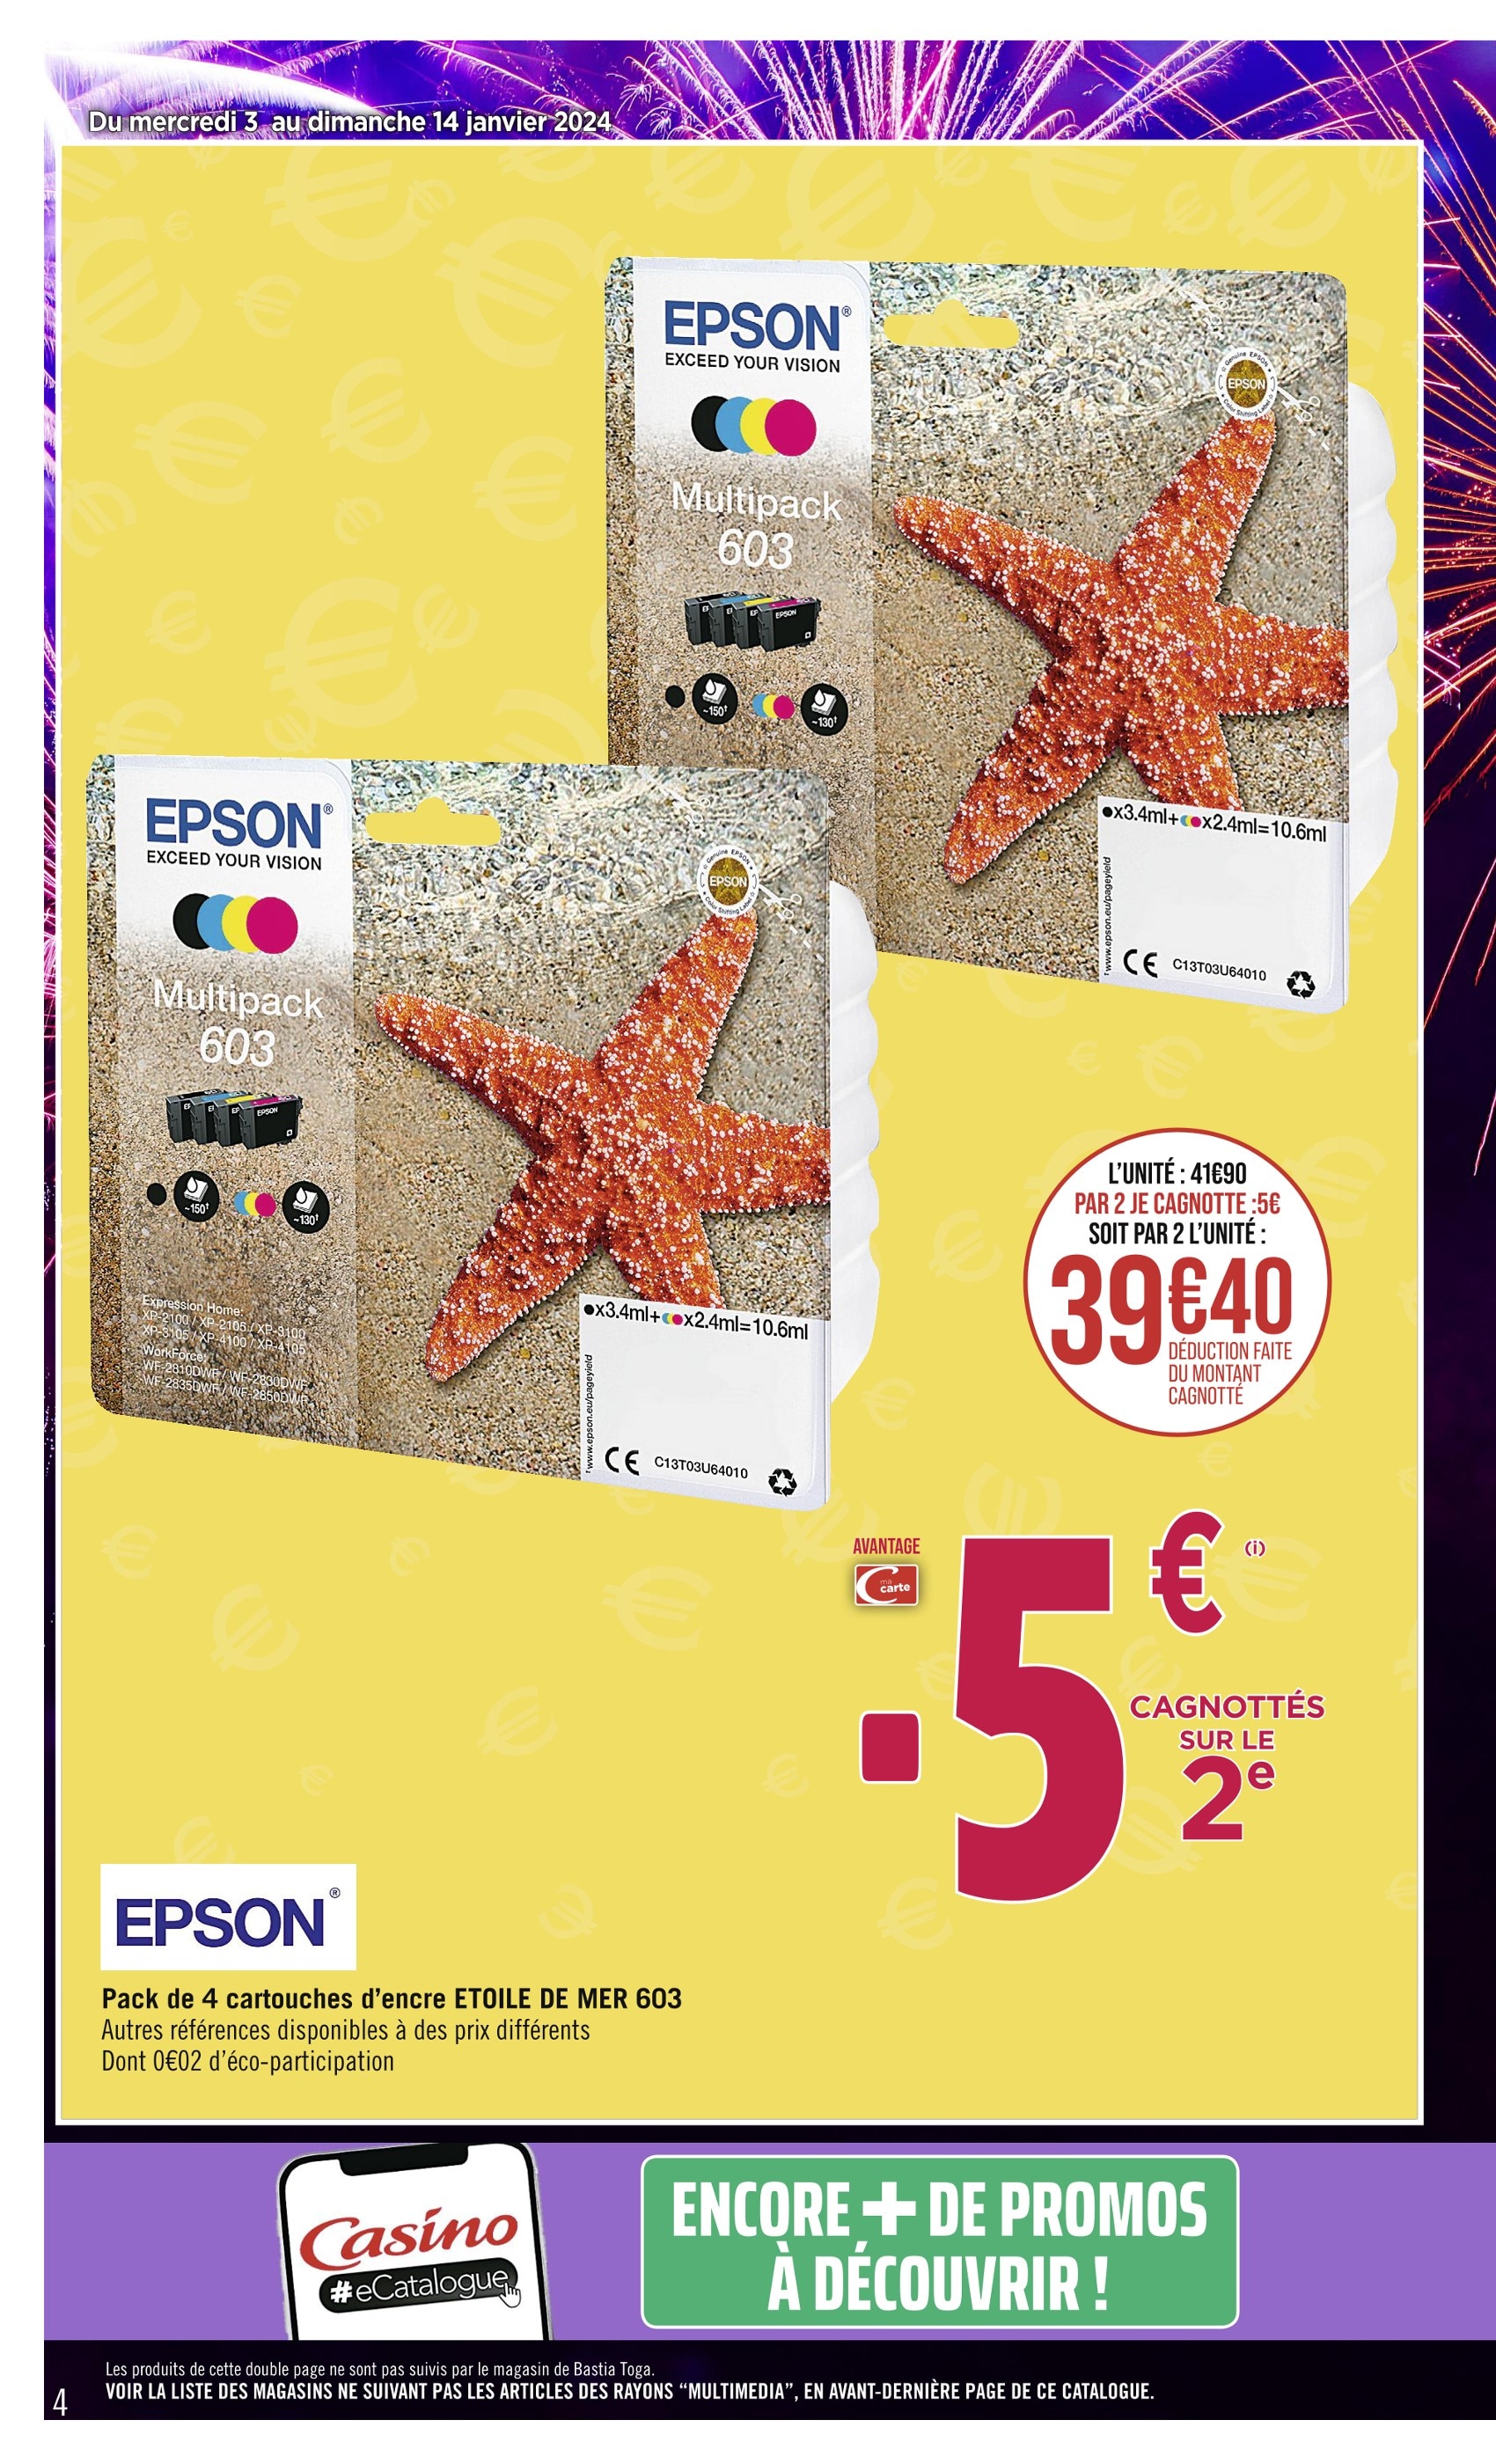 Promo Epson Cartouche Epson Multipack 603 Noir Couleur Etoile de Mer chez  Casino Supermarchés